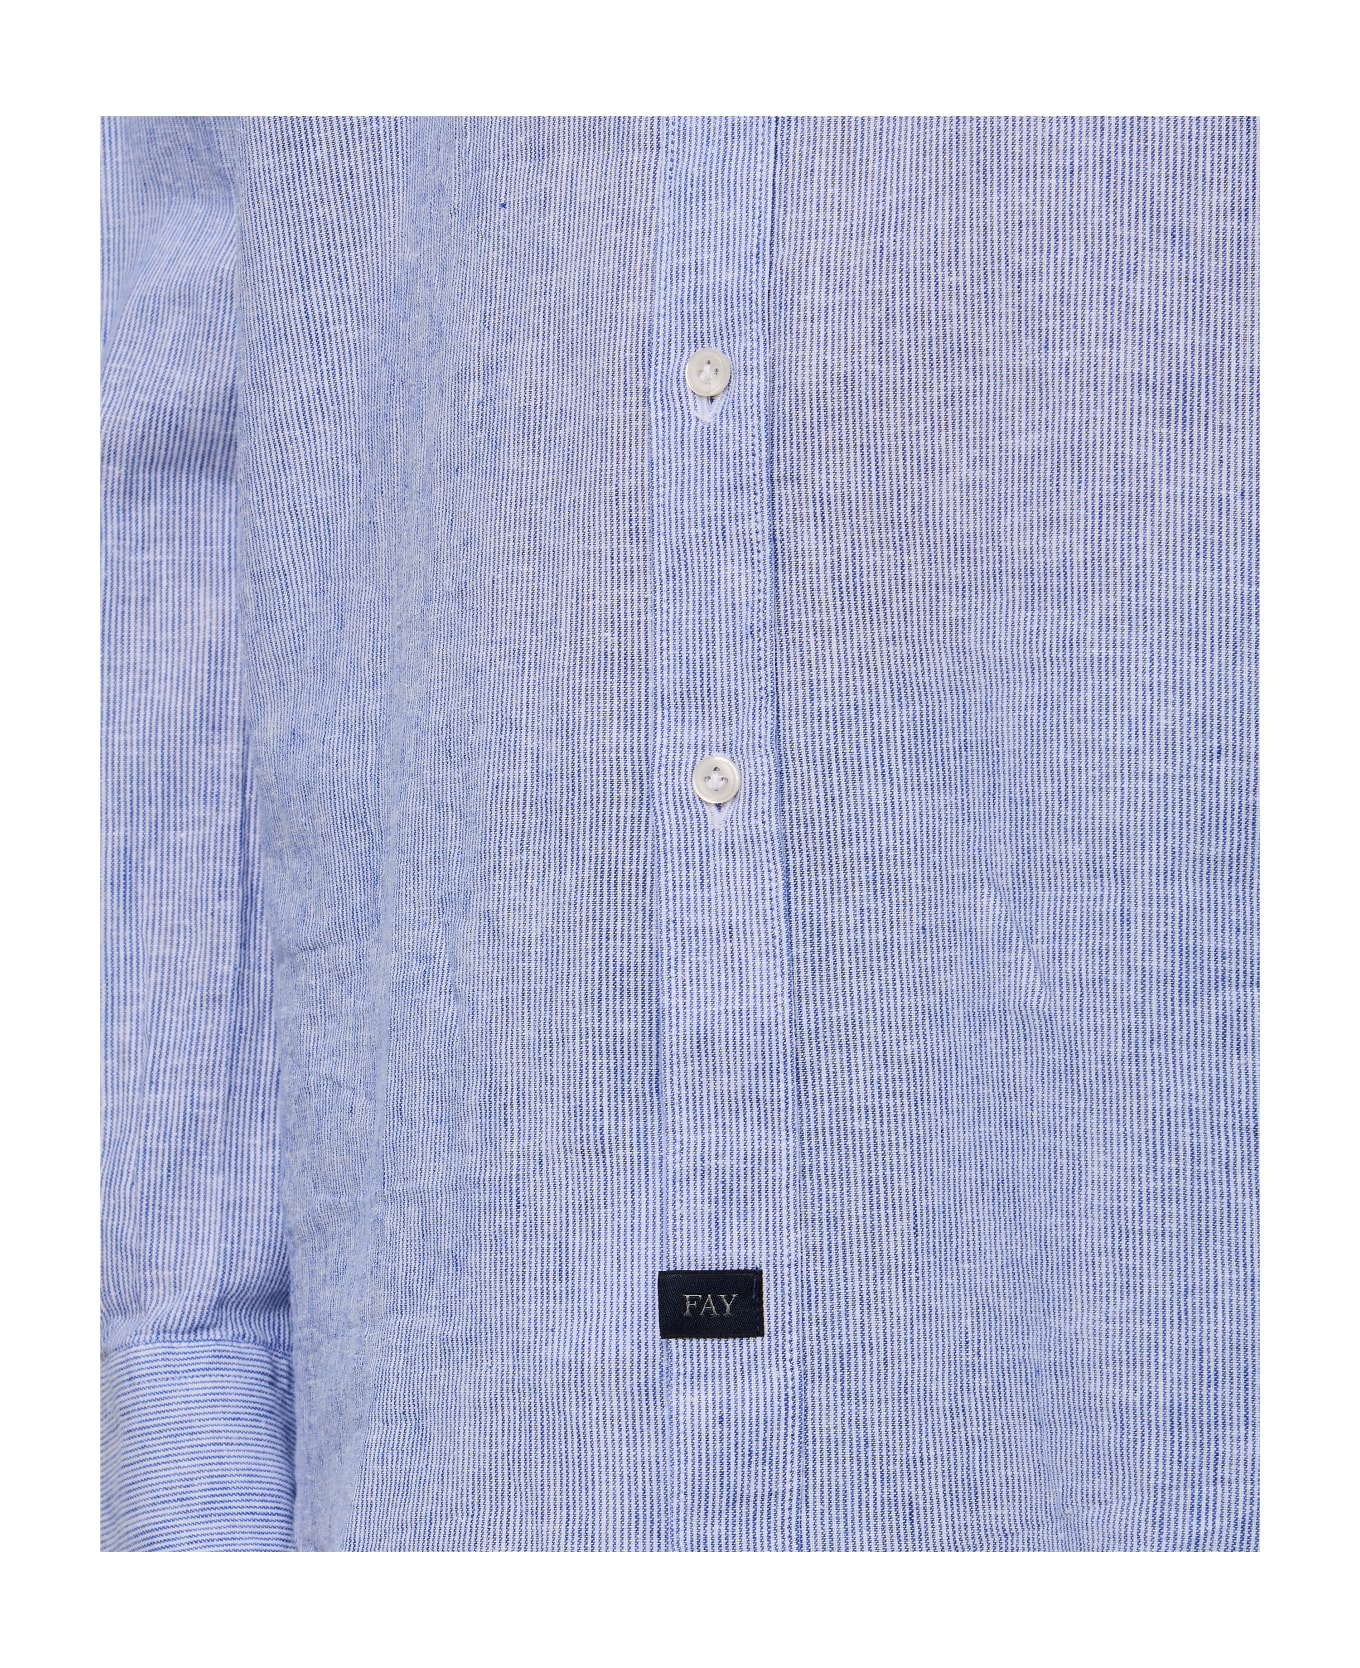 Fay Washed French Neck Shirt - Blu Bianco